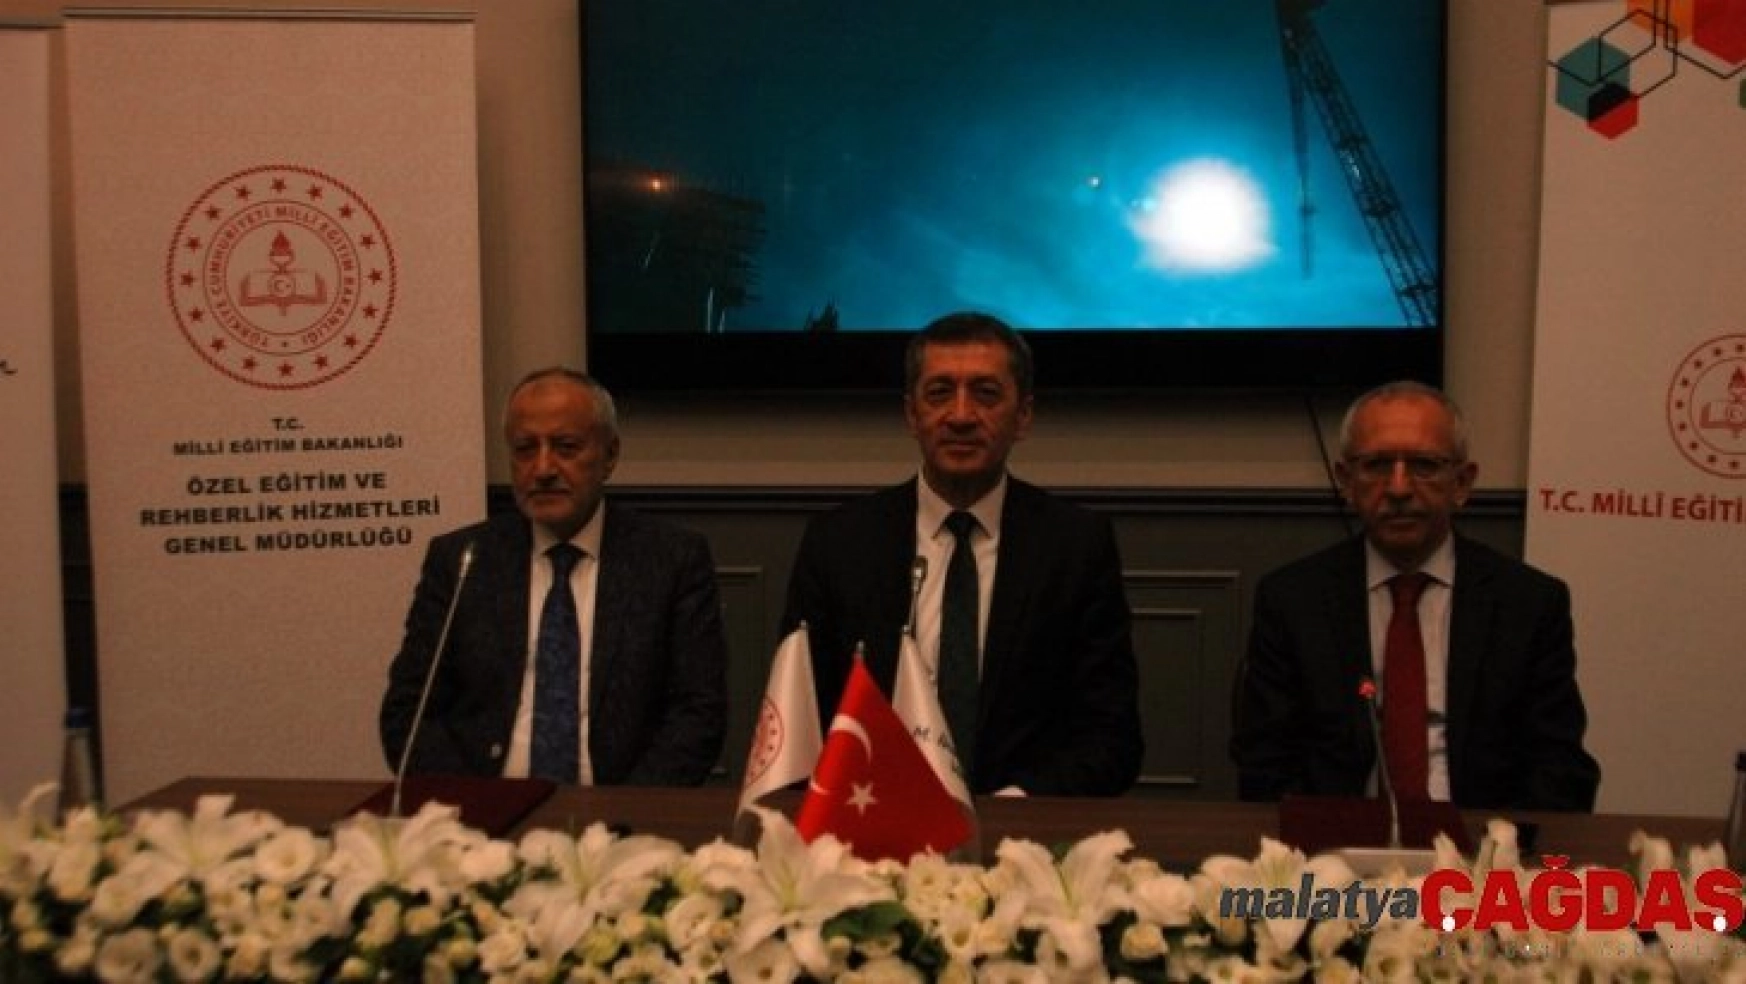 MEB ile M. İhsan Arslan Vakfı arasında iş birliği protokolü imzalandı